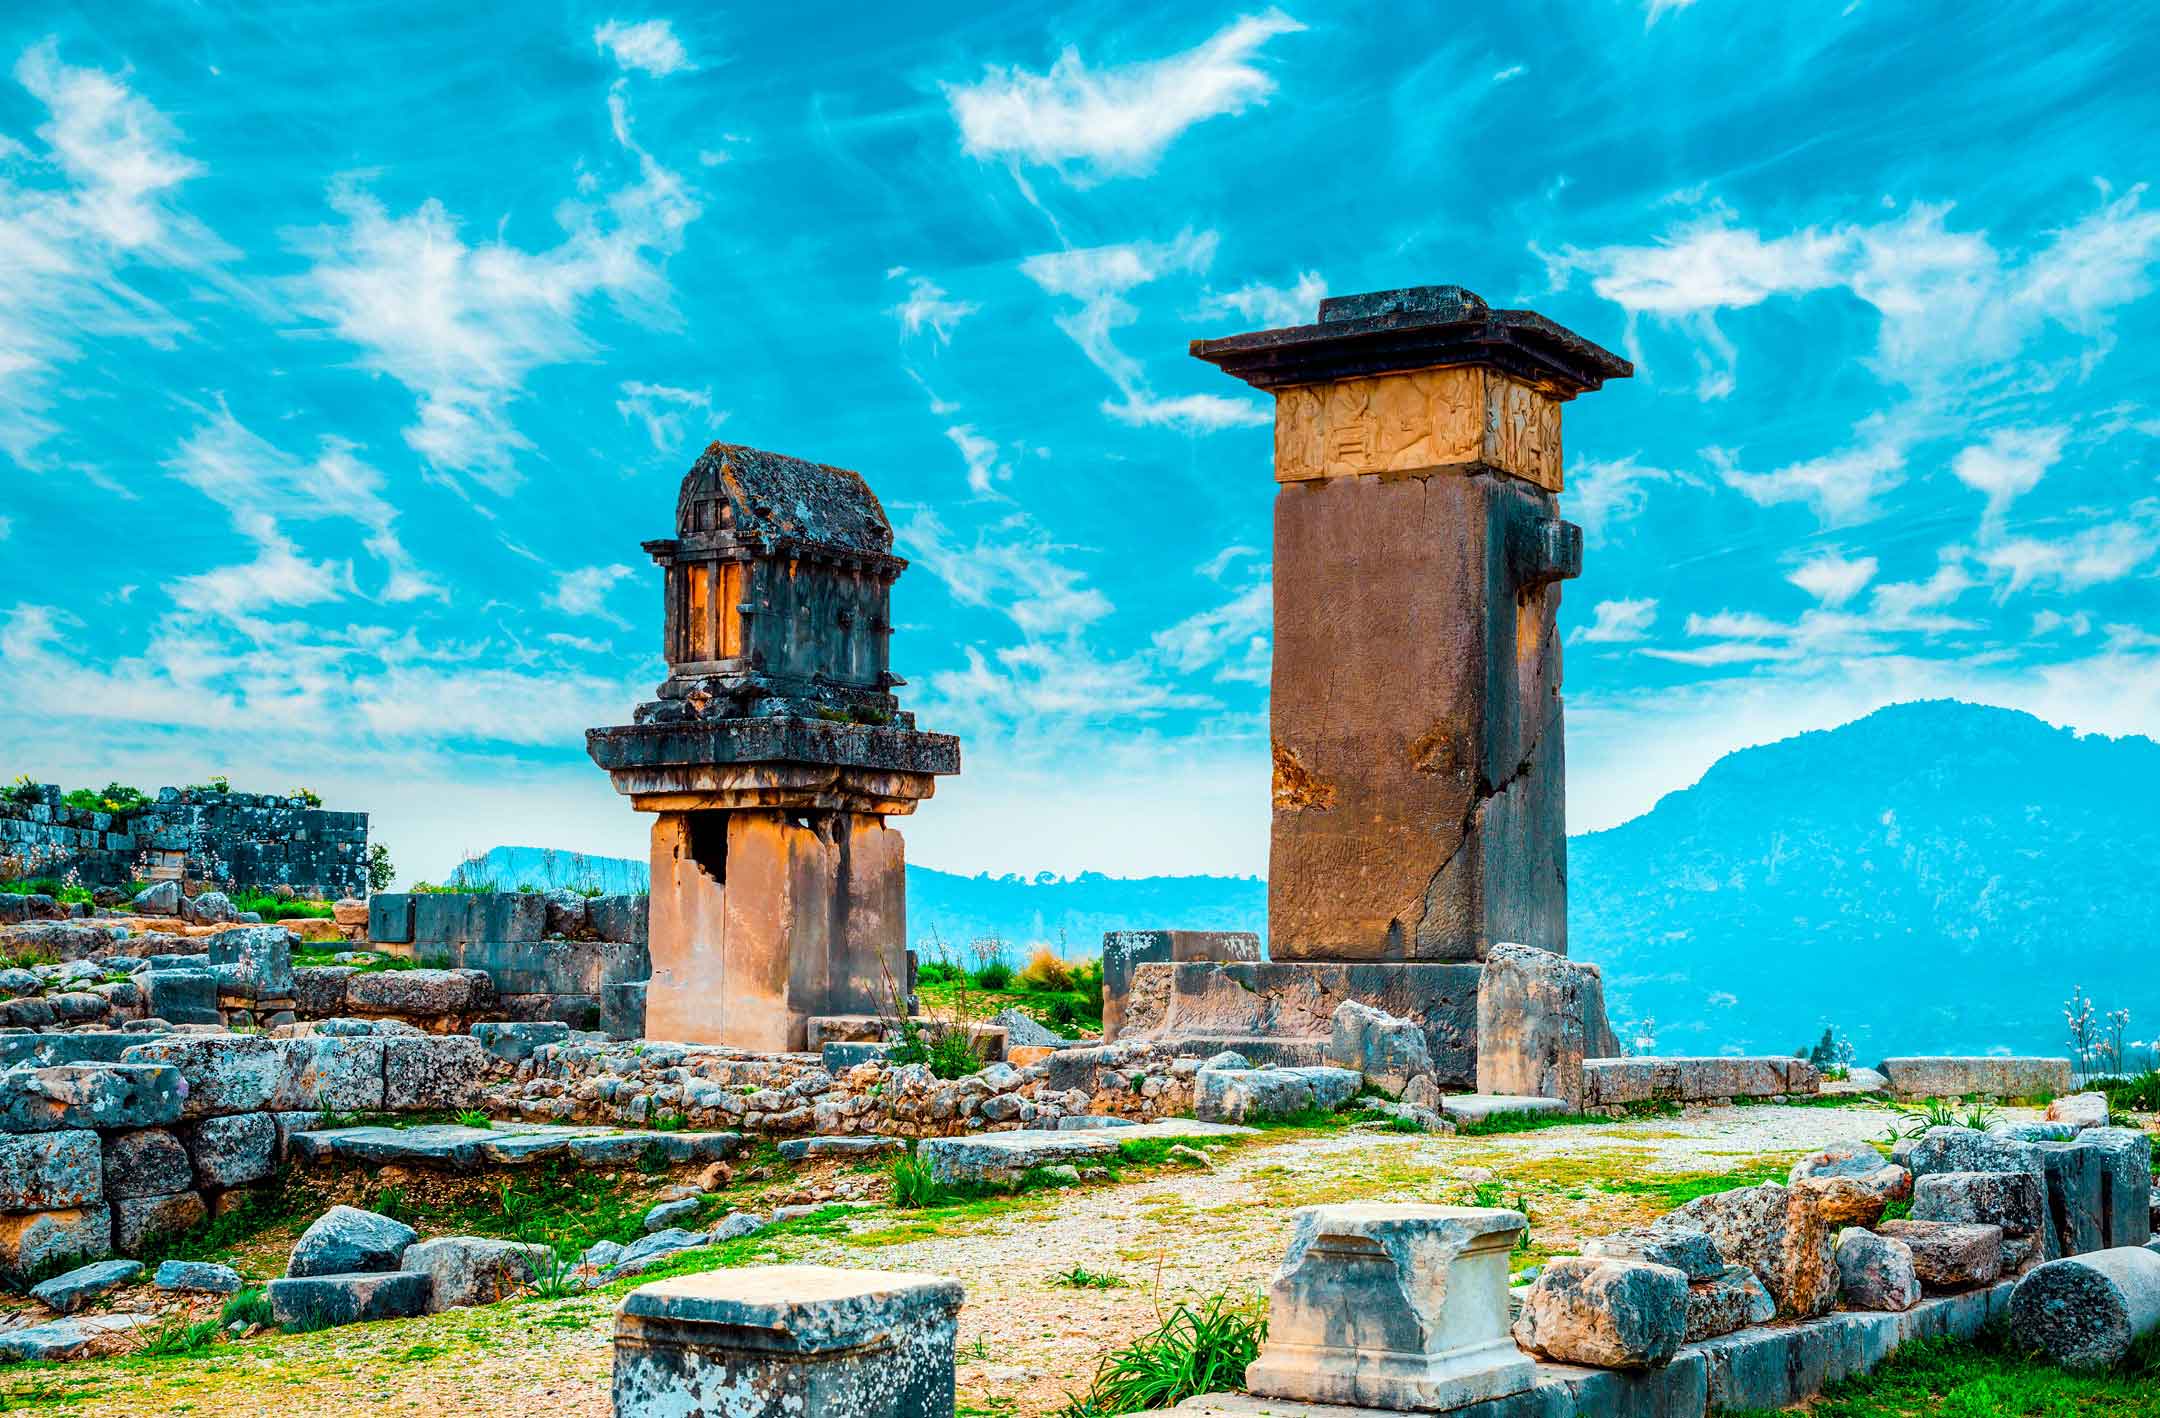 Xhantos şehti kalıntıları, Antalya Muğla 